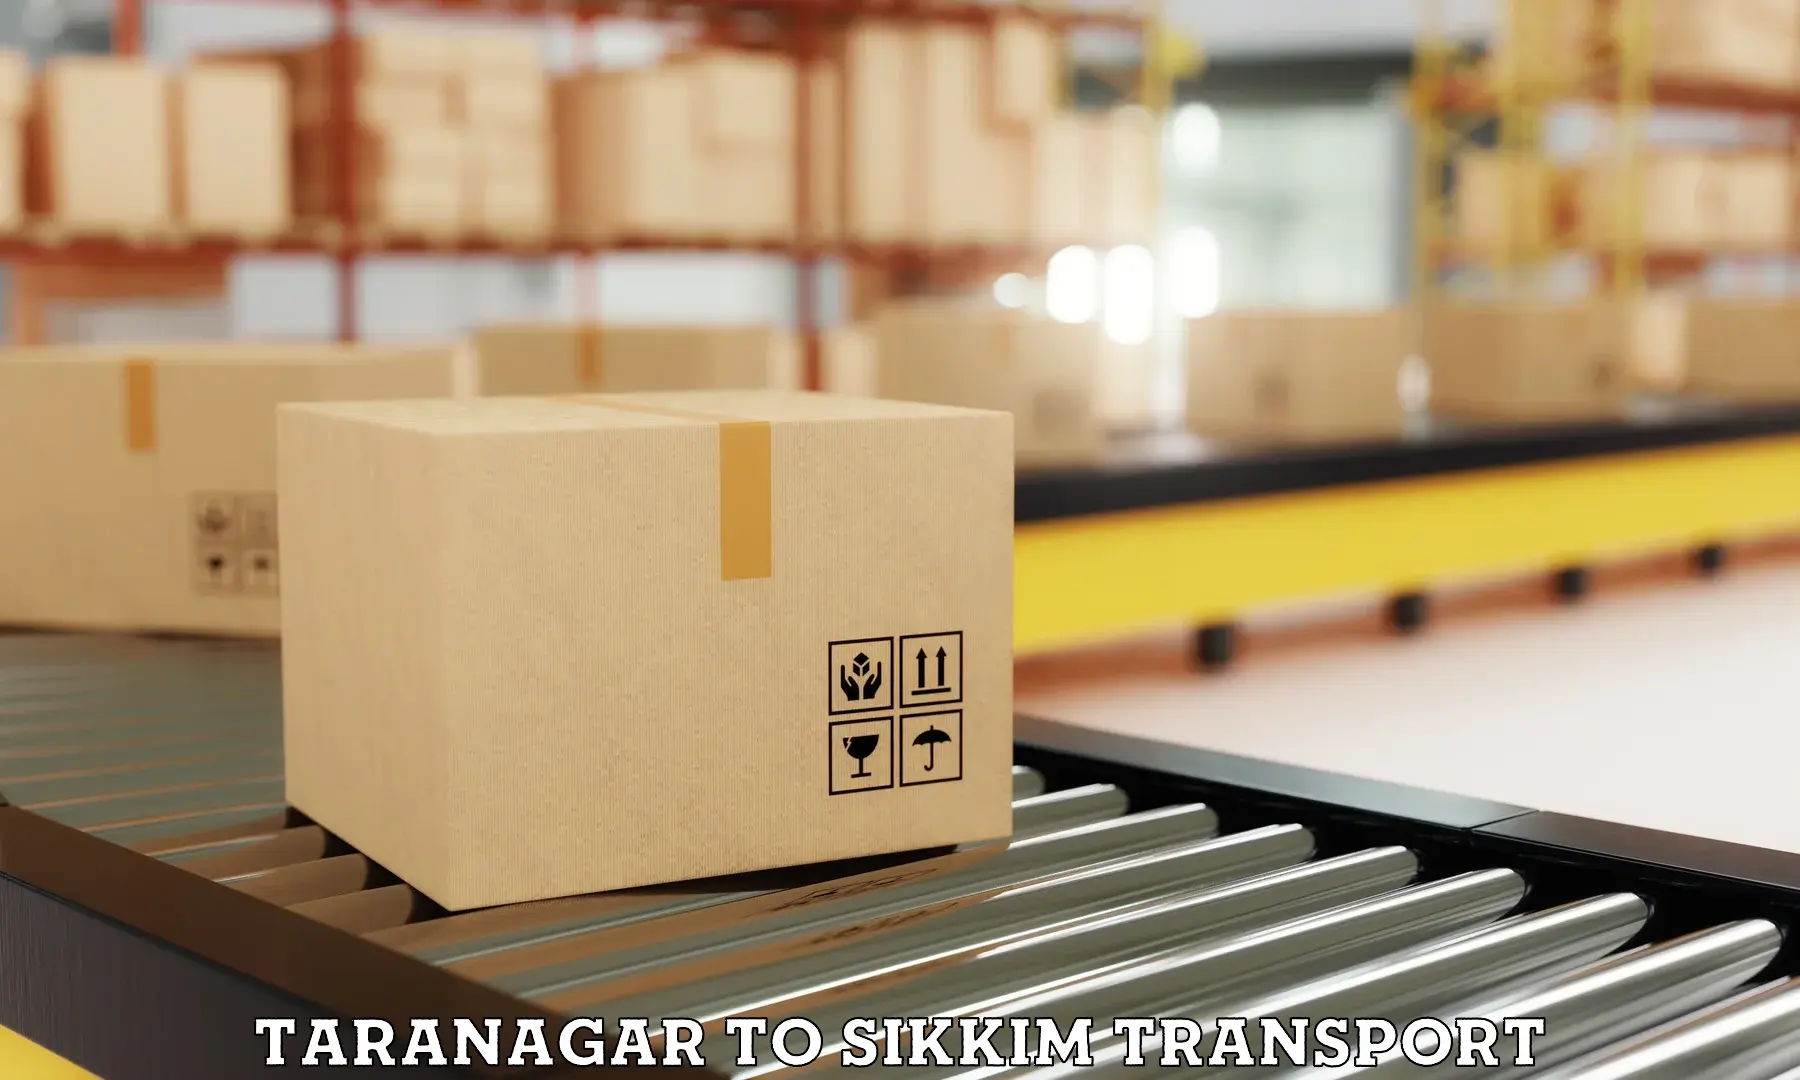 International cargo transportation services Taranagar to North Sikkim